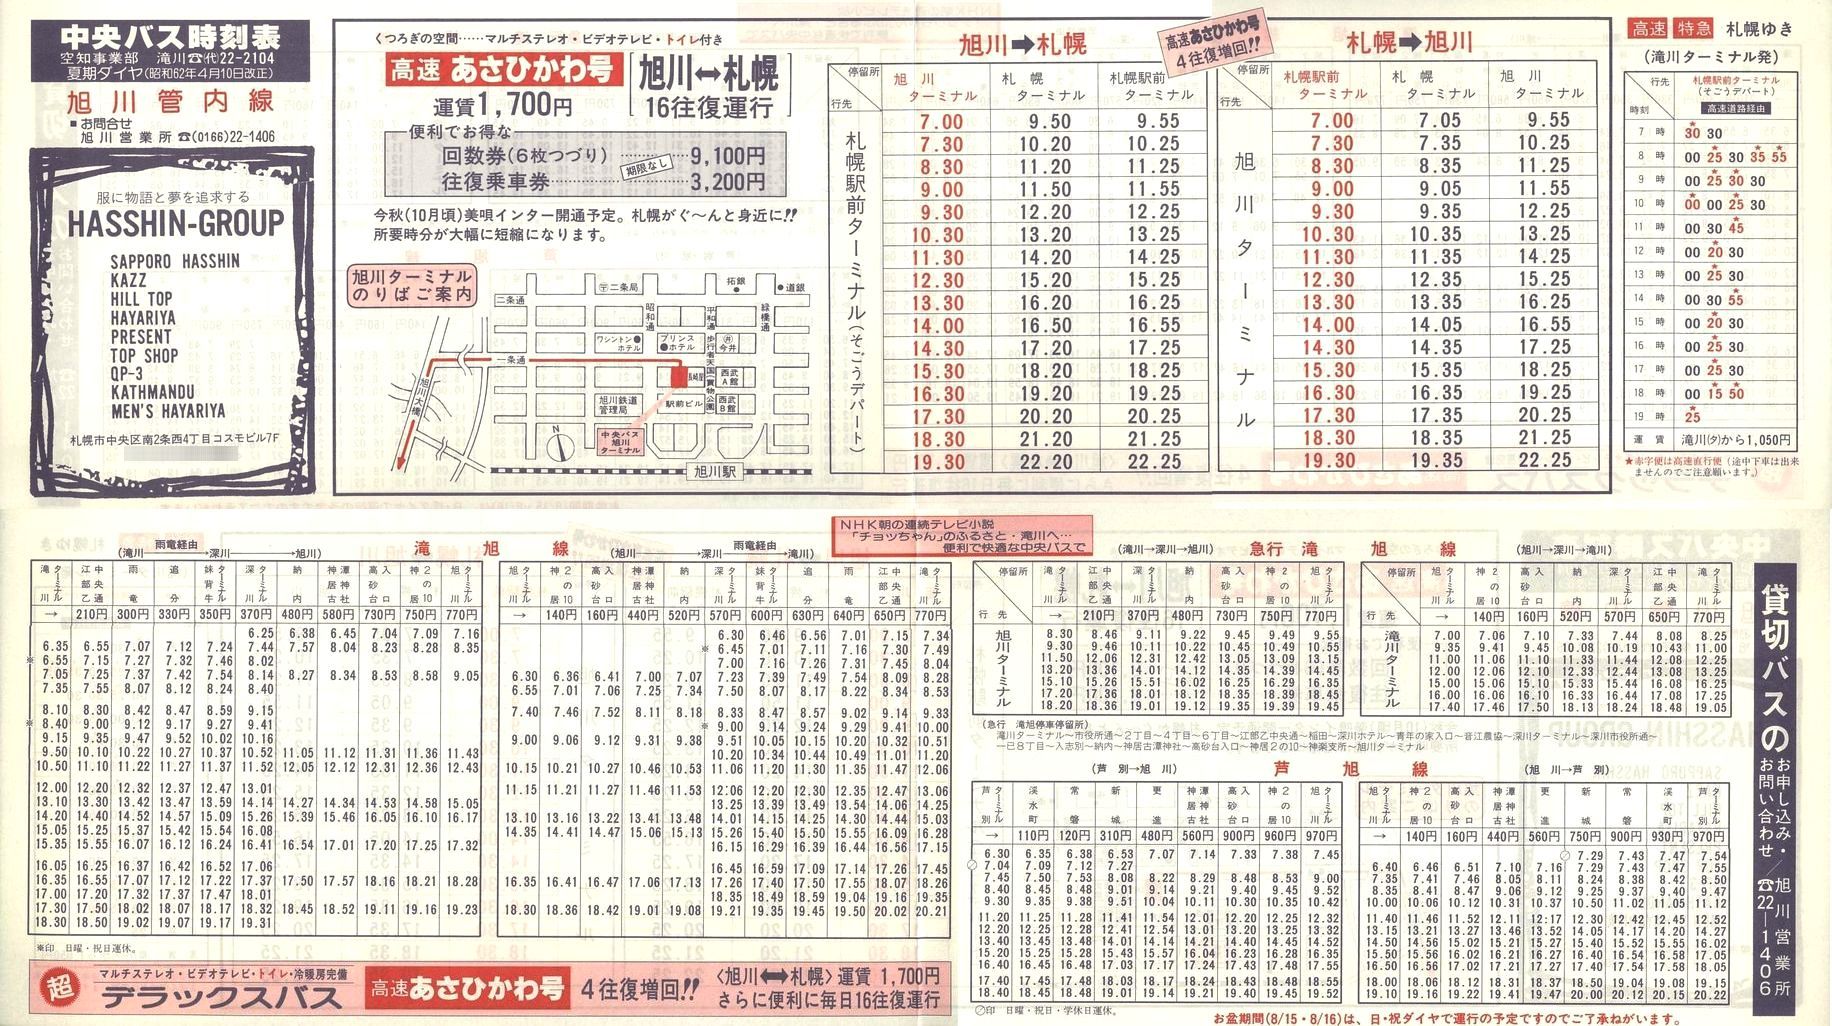 1987-04-10改正_北海道中央バス(空知)_旭川管内線時刻表